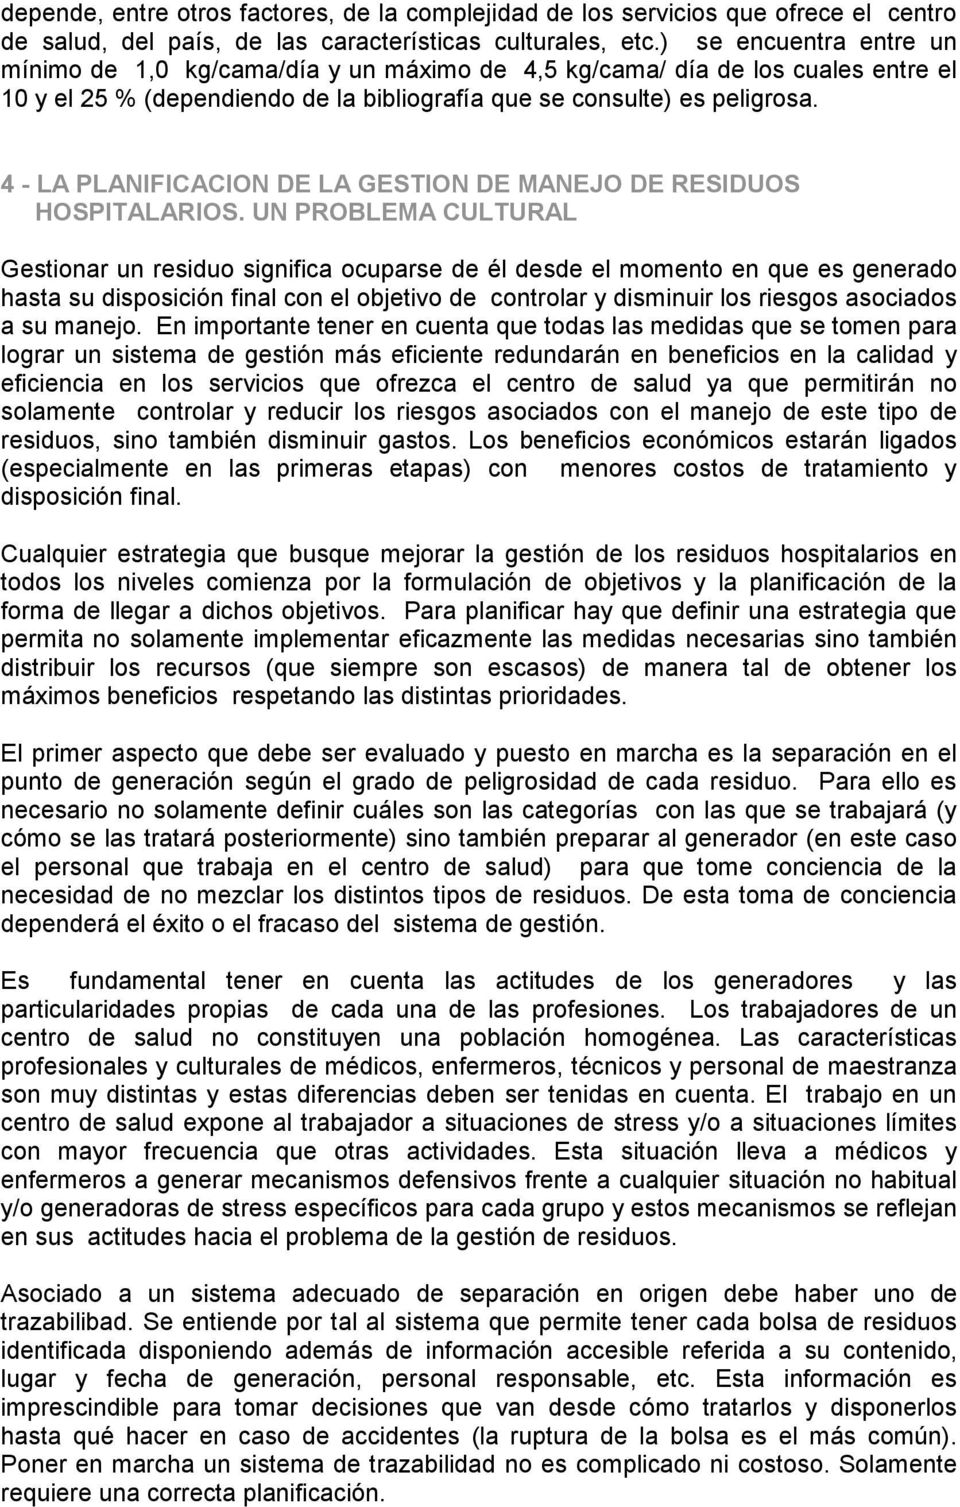 4 - LA PLANIFICACION DE LA GESTION DE MANEJO DE RESIDUOS HOSPITALARIOS.